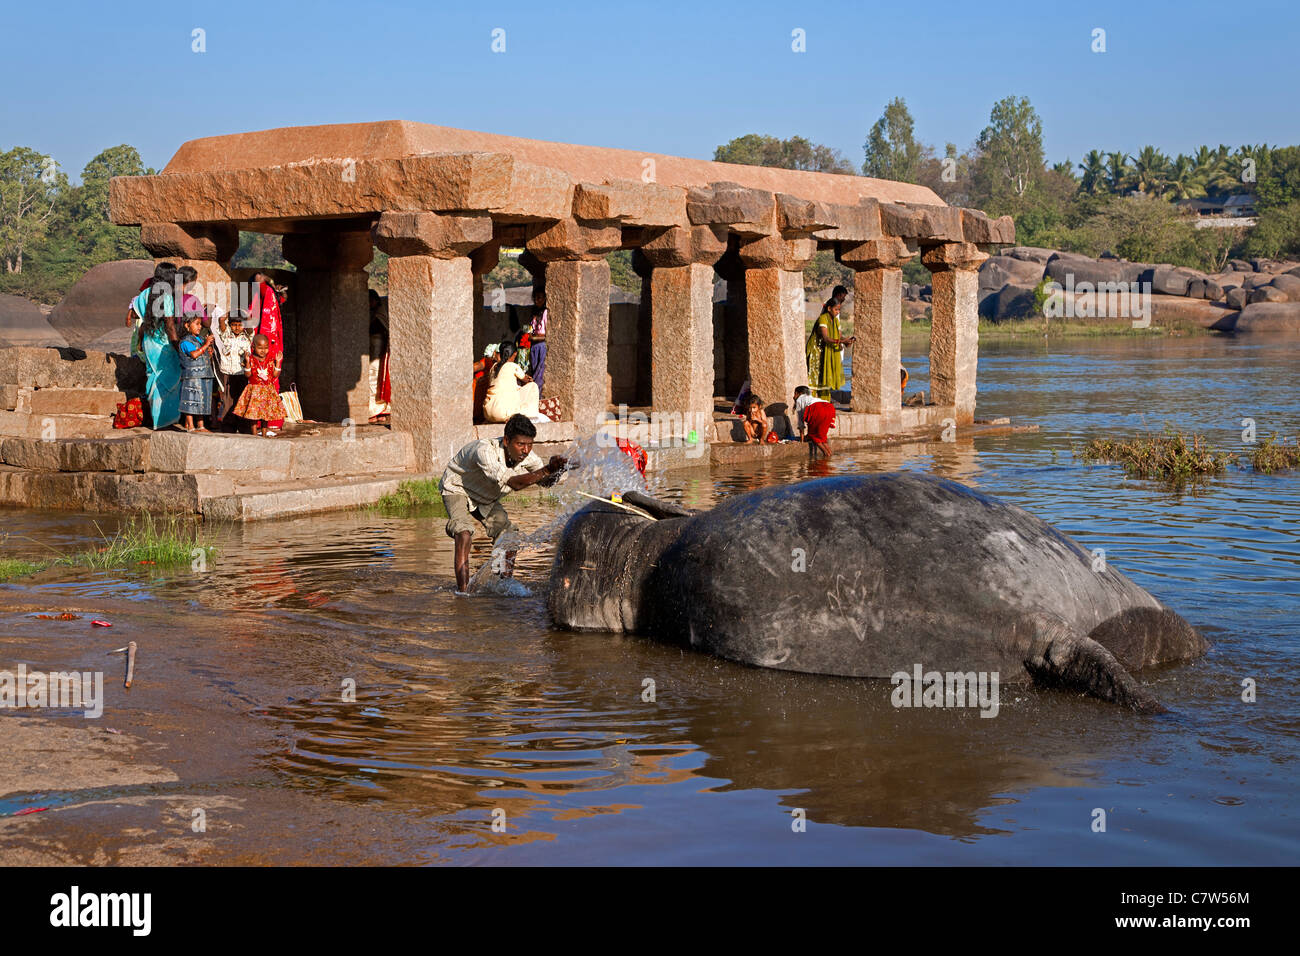 Mahout (elefante keeper) el lavado de un elefante. El río Tungabhadra. Hampi. Karnataka. La India Foto de stock